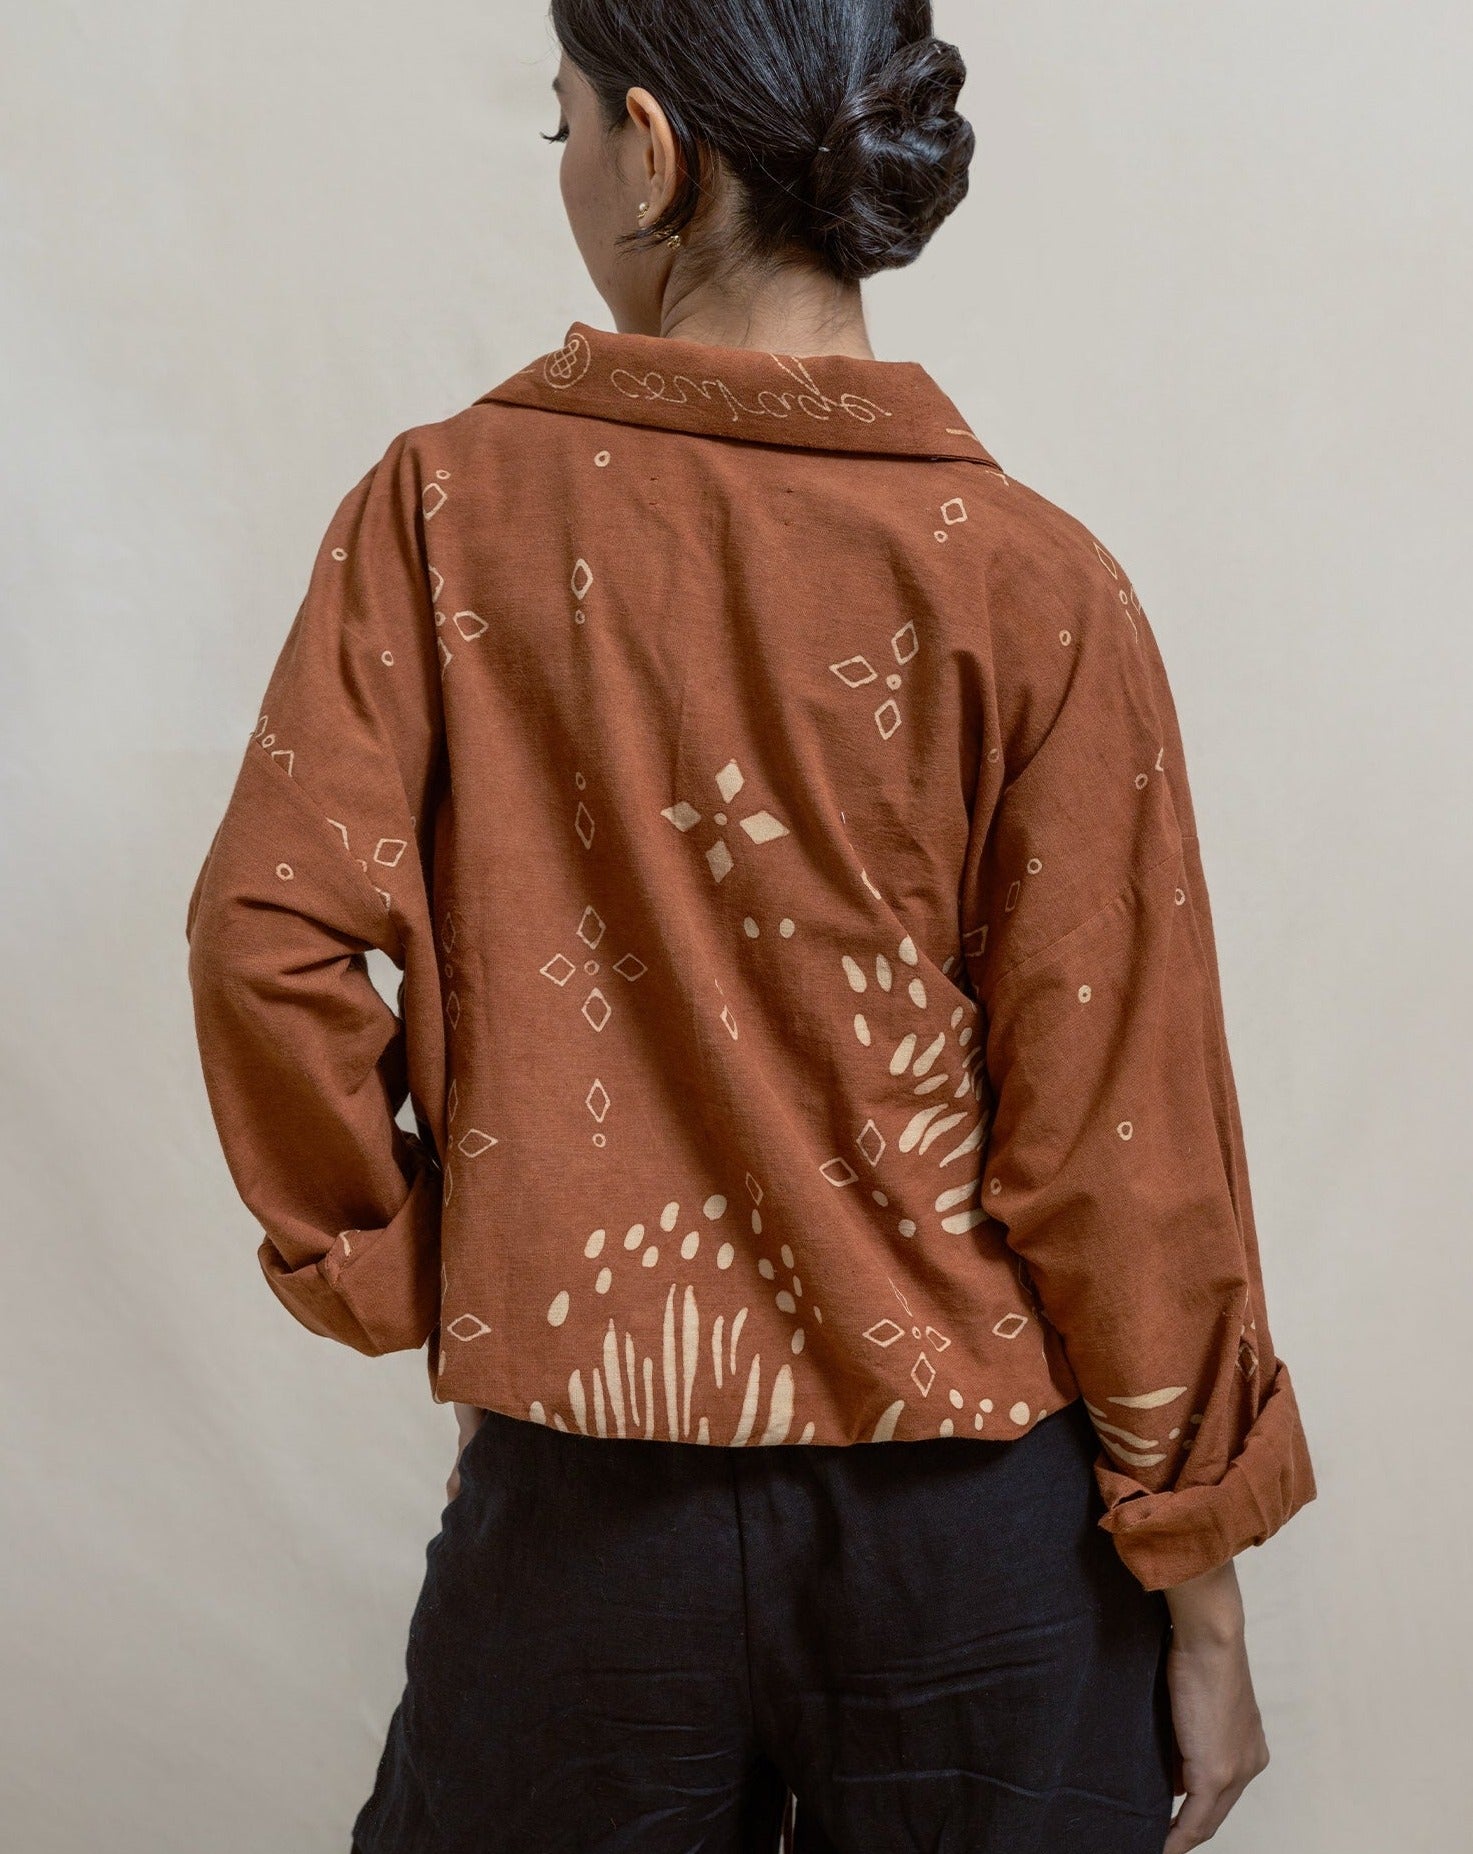 bomber jacket, women's jacket, batik bomber jacket, batik tulis, jacket style, slow fashion, handmade